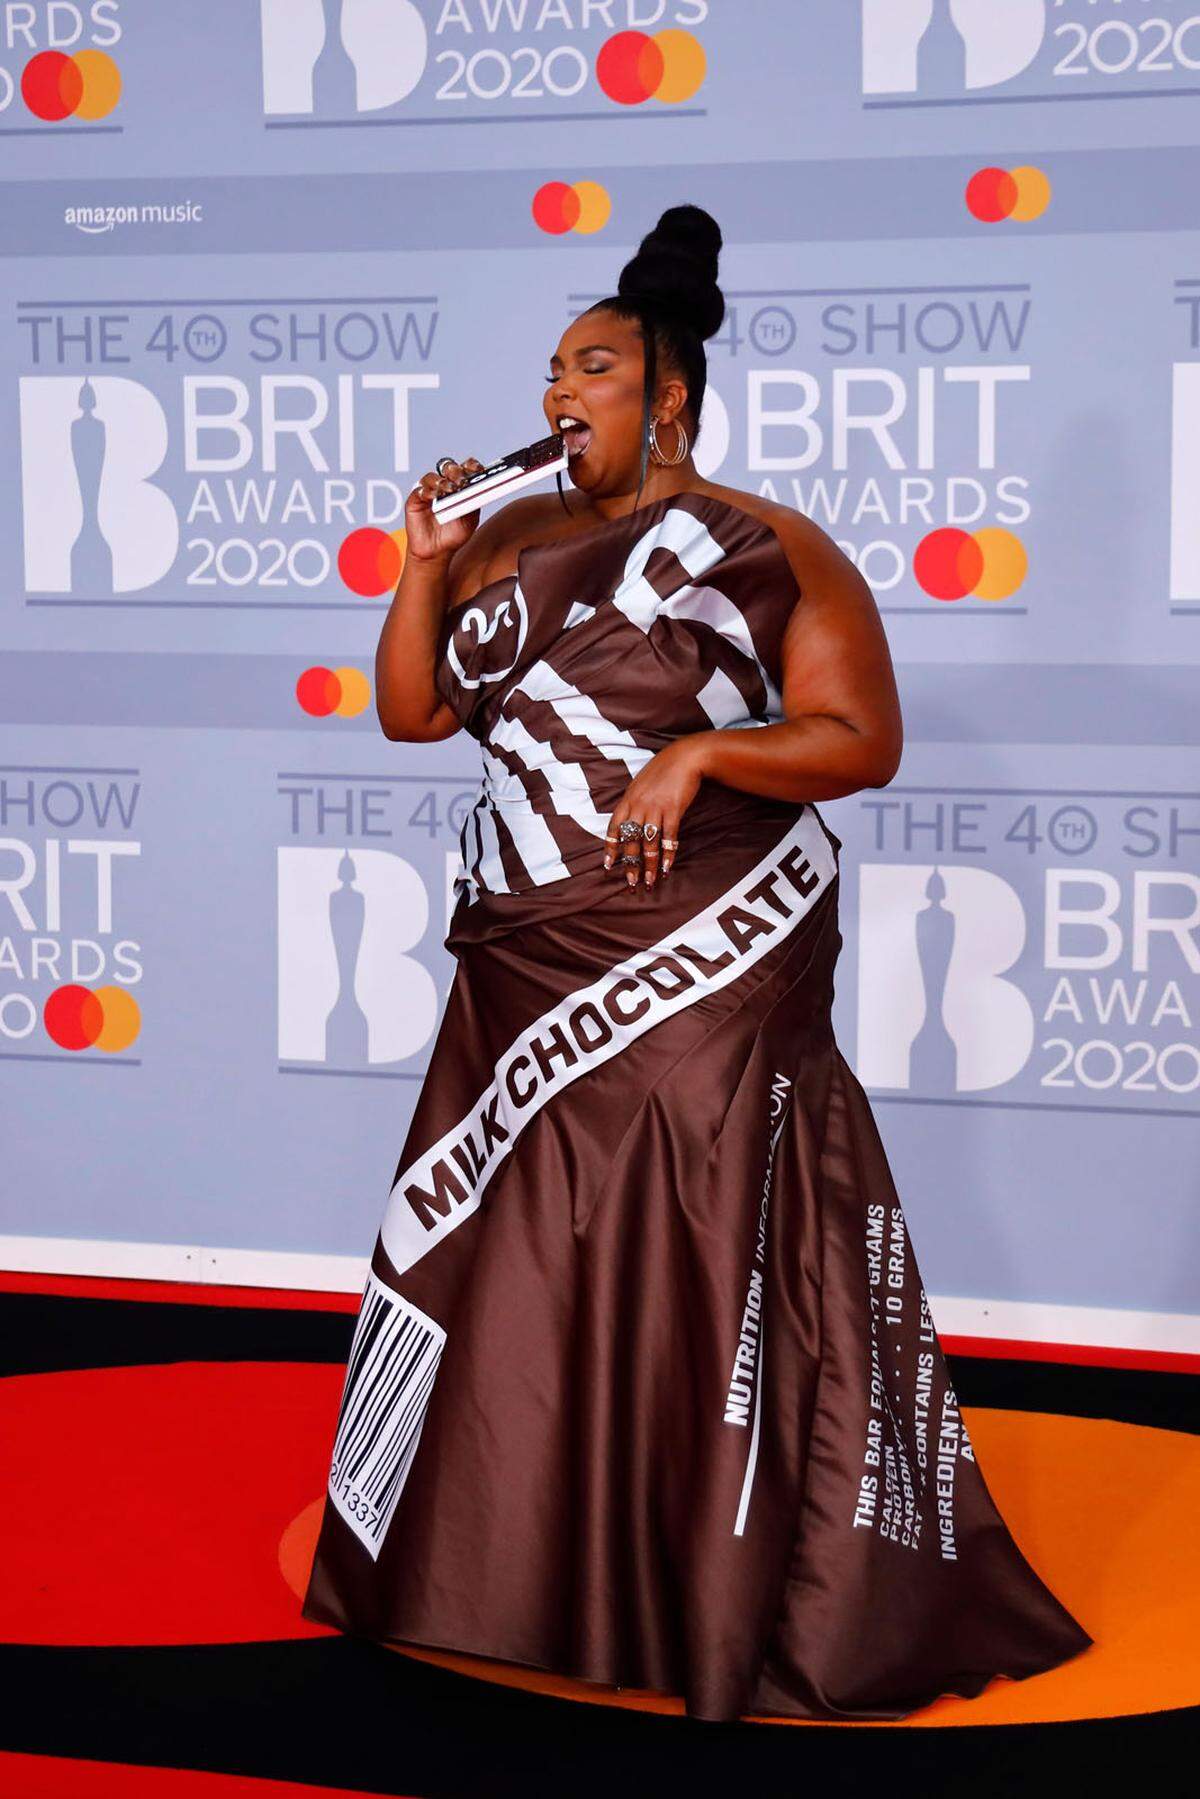 Zum 40. Mal wurden bei den Brit Awards in London nationale und internationale Musiker geehrt. US-Sängerin Lizzo erschien auf dem roten Teppich in einem Kleid mit Schokoladenriegel-Aufdruck von Moschino. Später stand sie auch auf der Bühne und gab ihr Lied "Good As Hell" zum Besten.